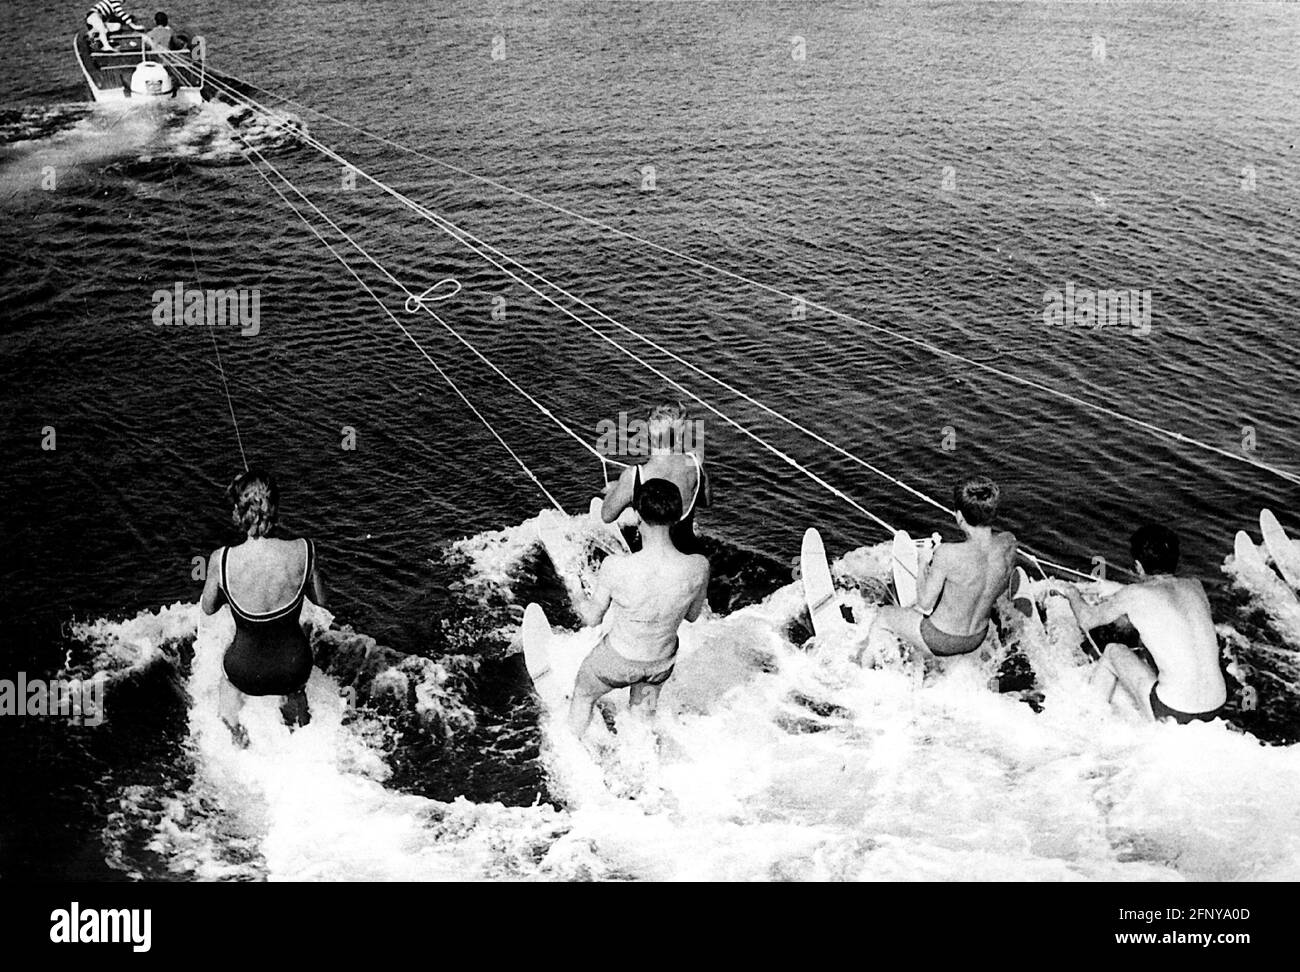 tourisme, sports nautiques, adolescents avec ski nautique, années 1960, DROITS-SUPPLÉMENTAIRES-AUTORISATION-INFO-NON-DISPONIBLE Banque D'Images